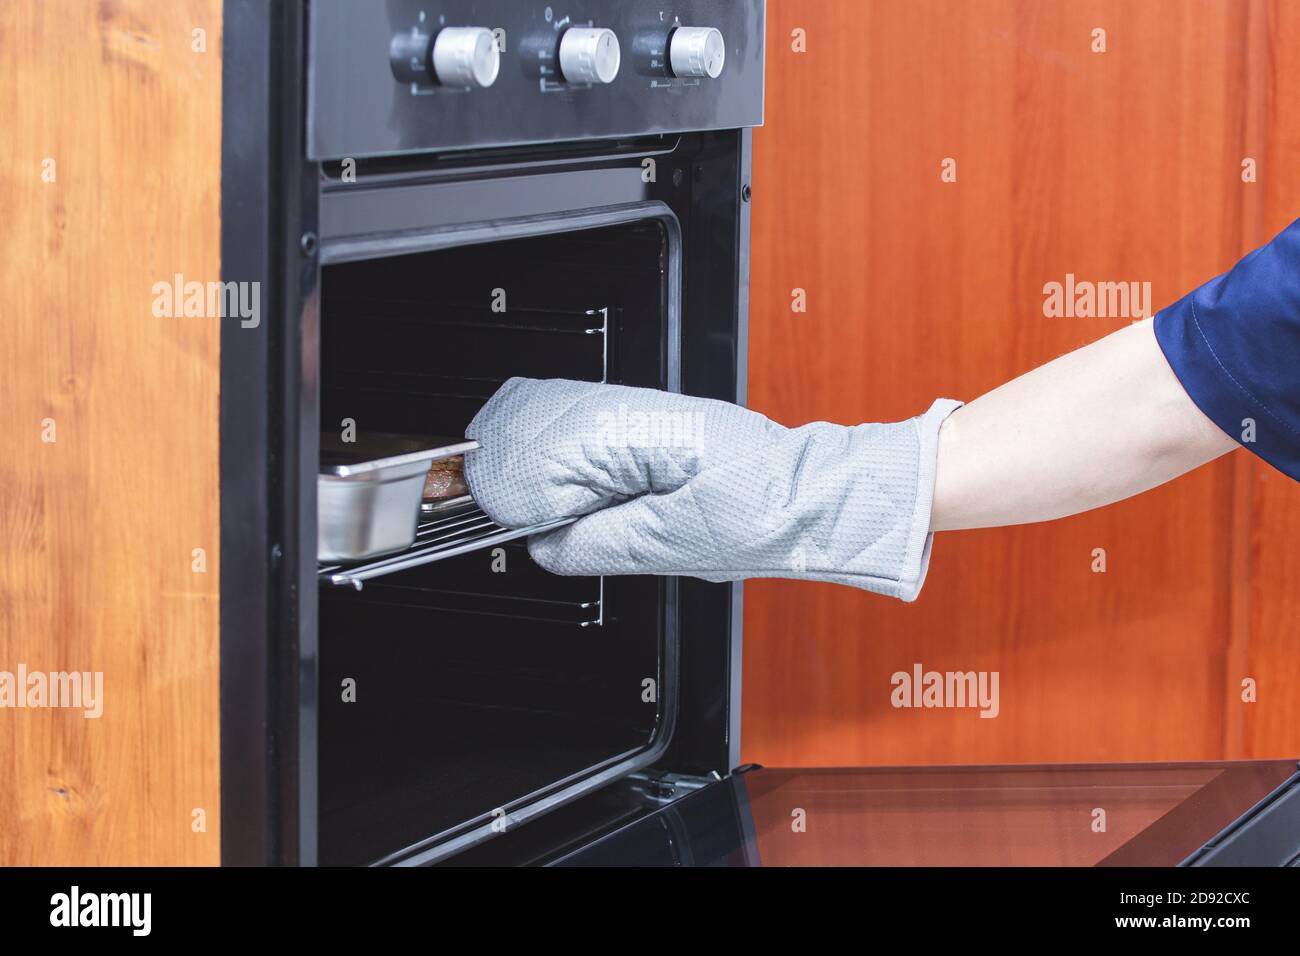 Una mano in un guanto protettivo tira fuori un piatto di carne calda cotta dal forno. Concetto di sicurezza. Cucina, preparazione del cibo, cucina. Ristorante, caffè, mangiare Foto Stock